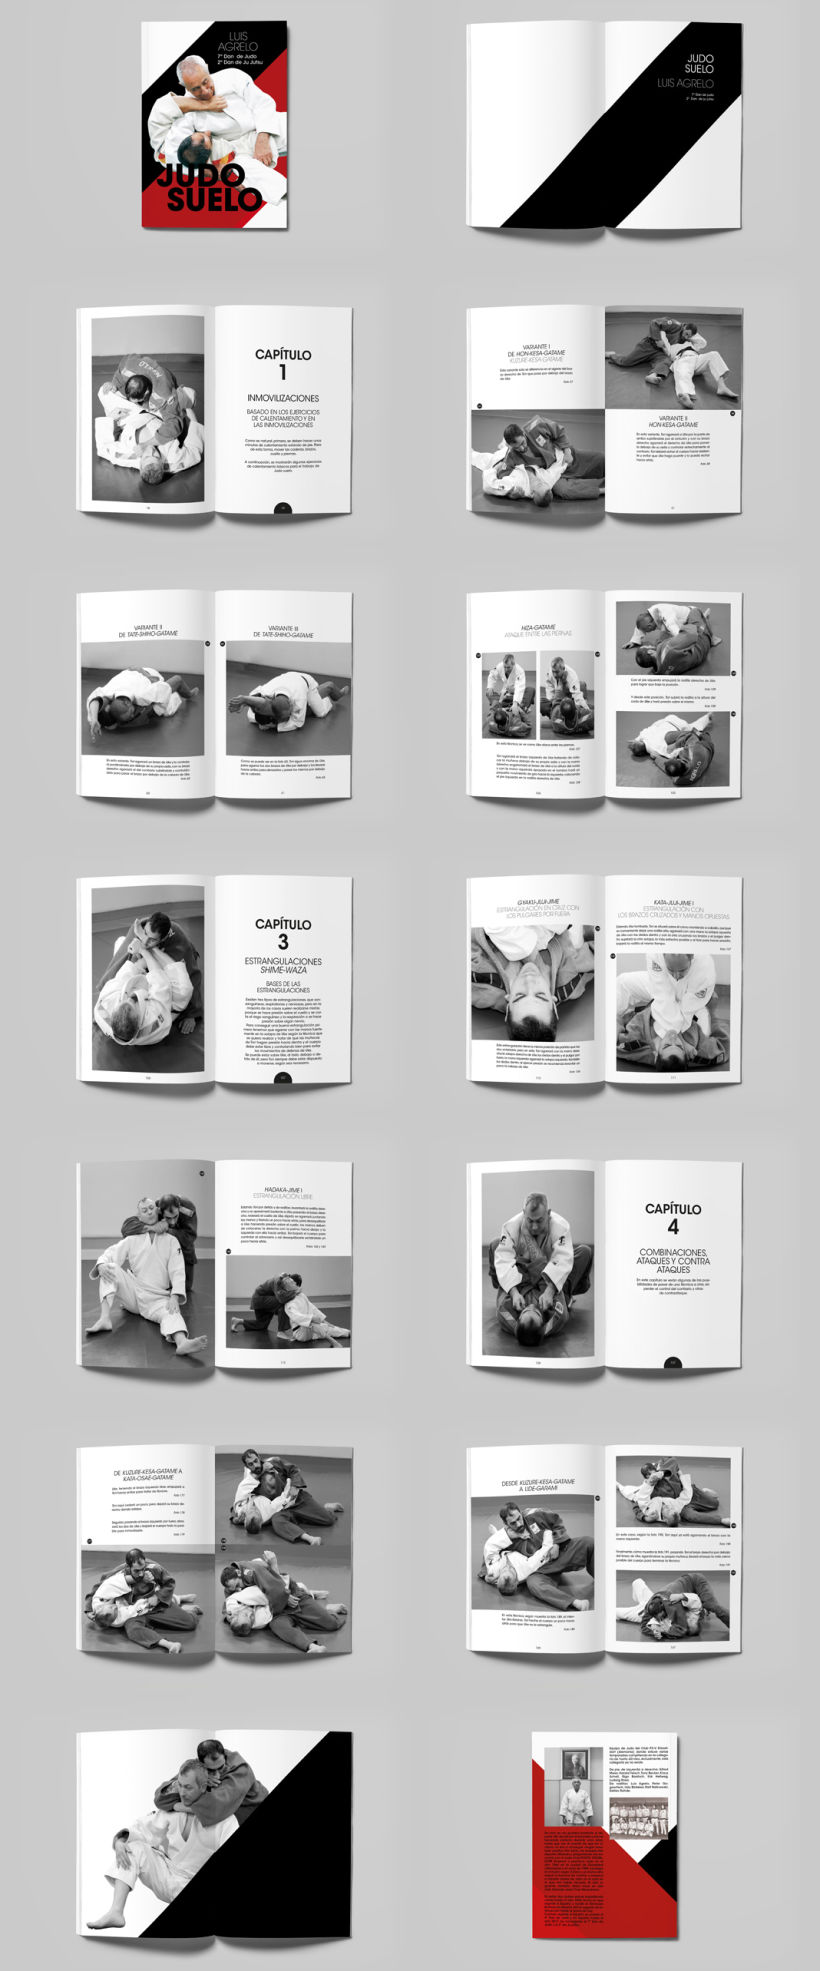 Diseño y maquetación del libro Judo suelo 4